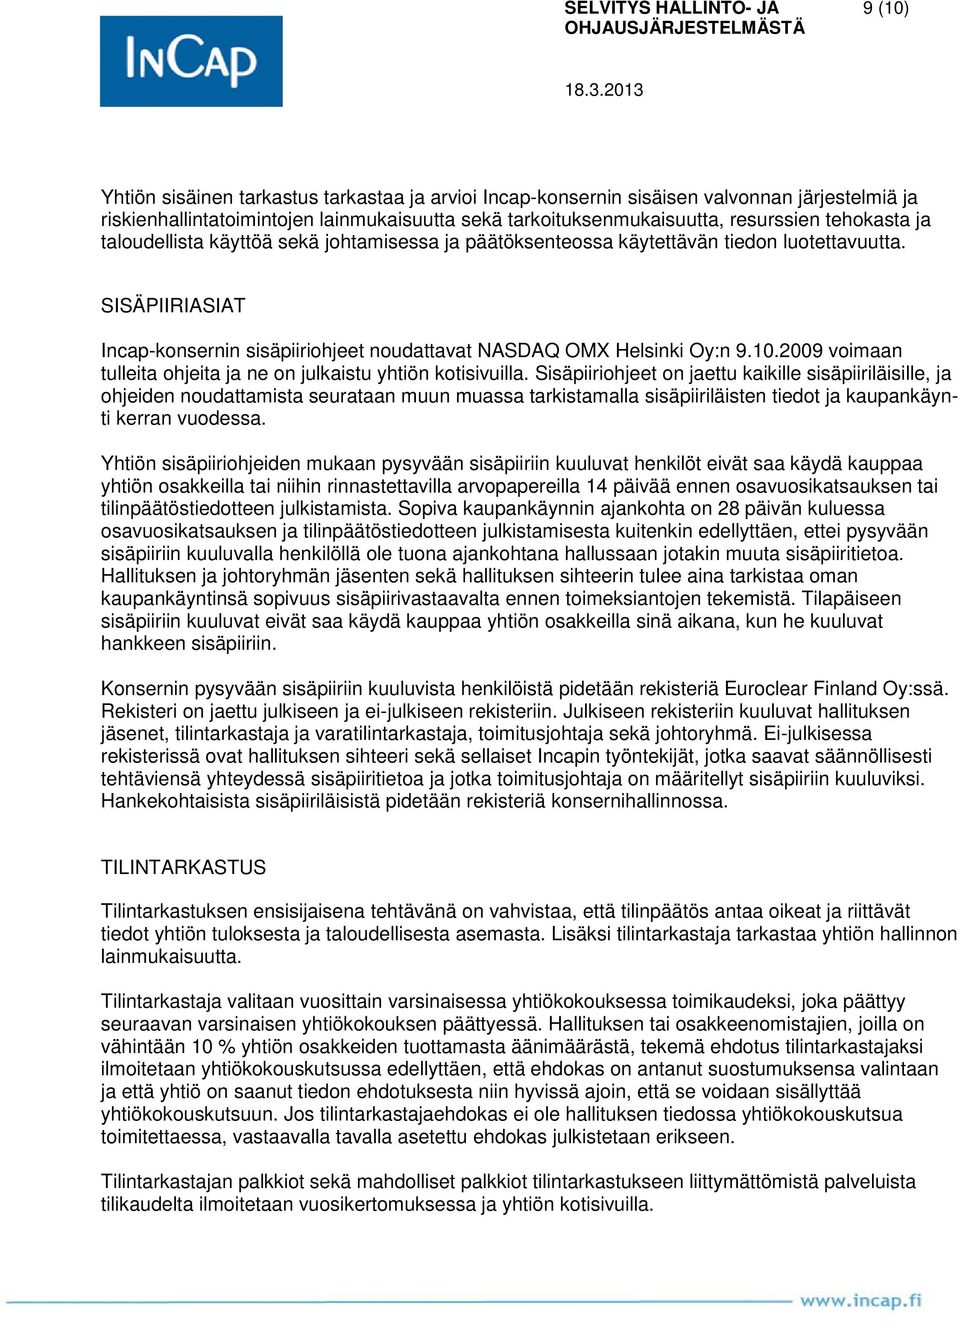 SISÄPIIRIASIAT Incap-konsernin sisäpiiriohjeet noudattavat NASDAQ OMX Helsinki Oy:n 9.10.2009 voimaan tulleita ohjeita ja ne on julkaistu yhtiön kotisivuilla.